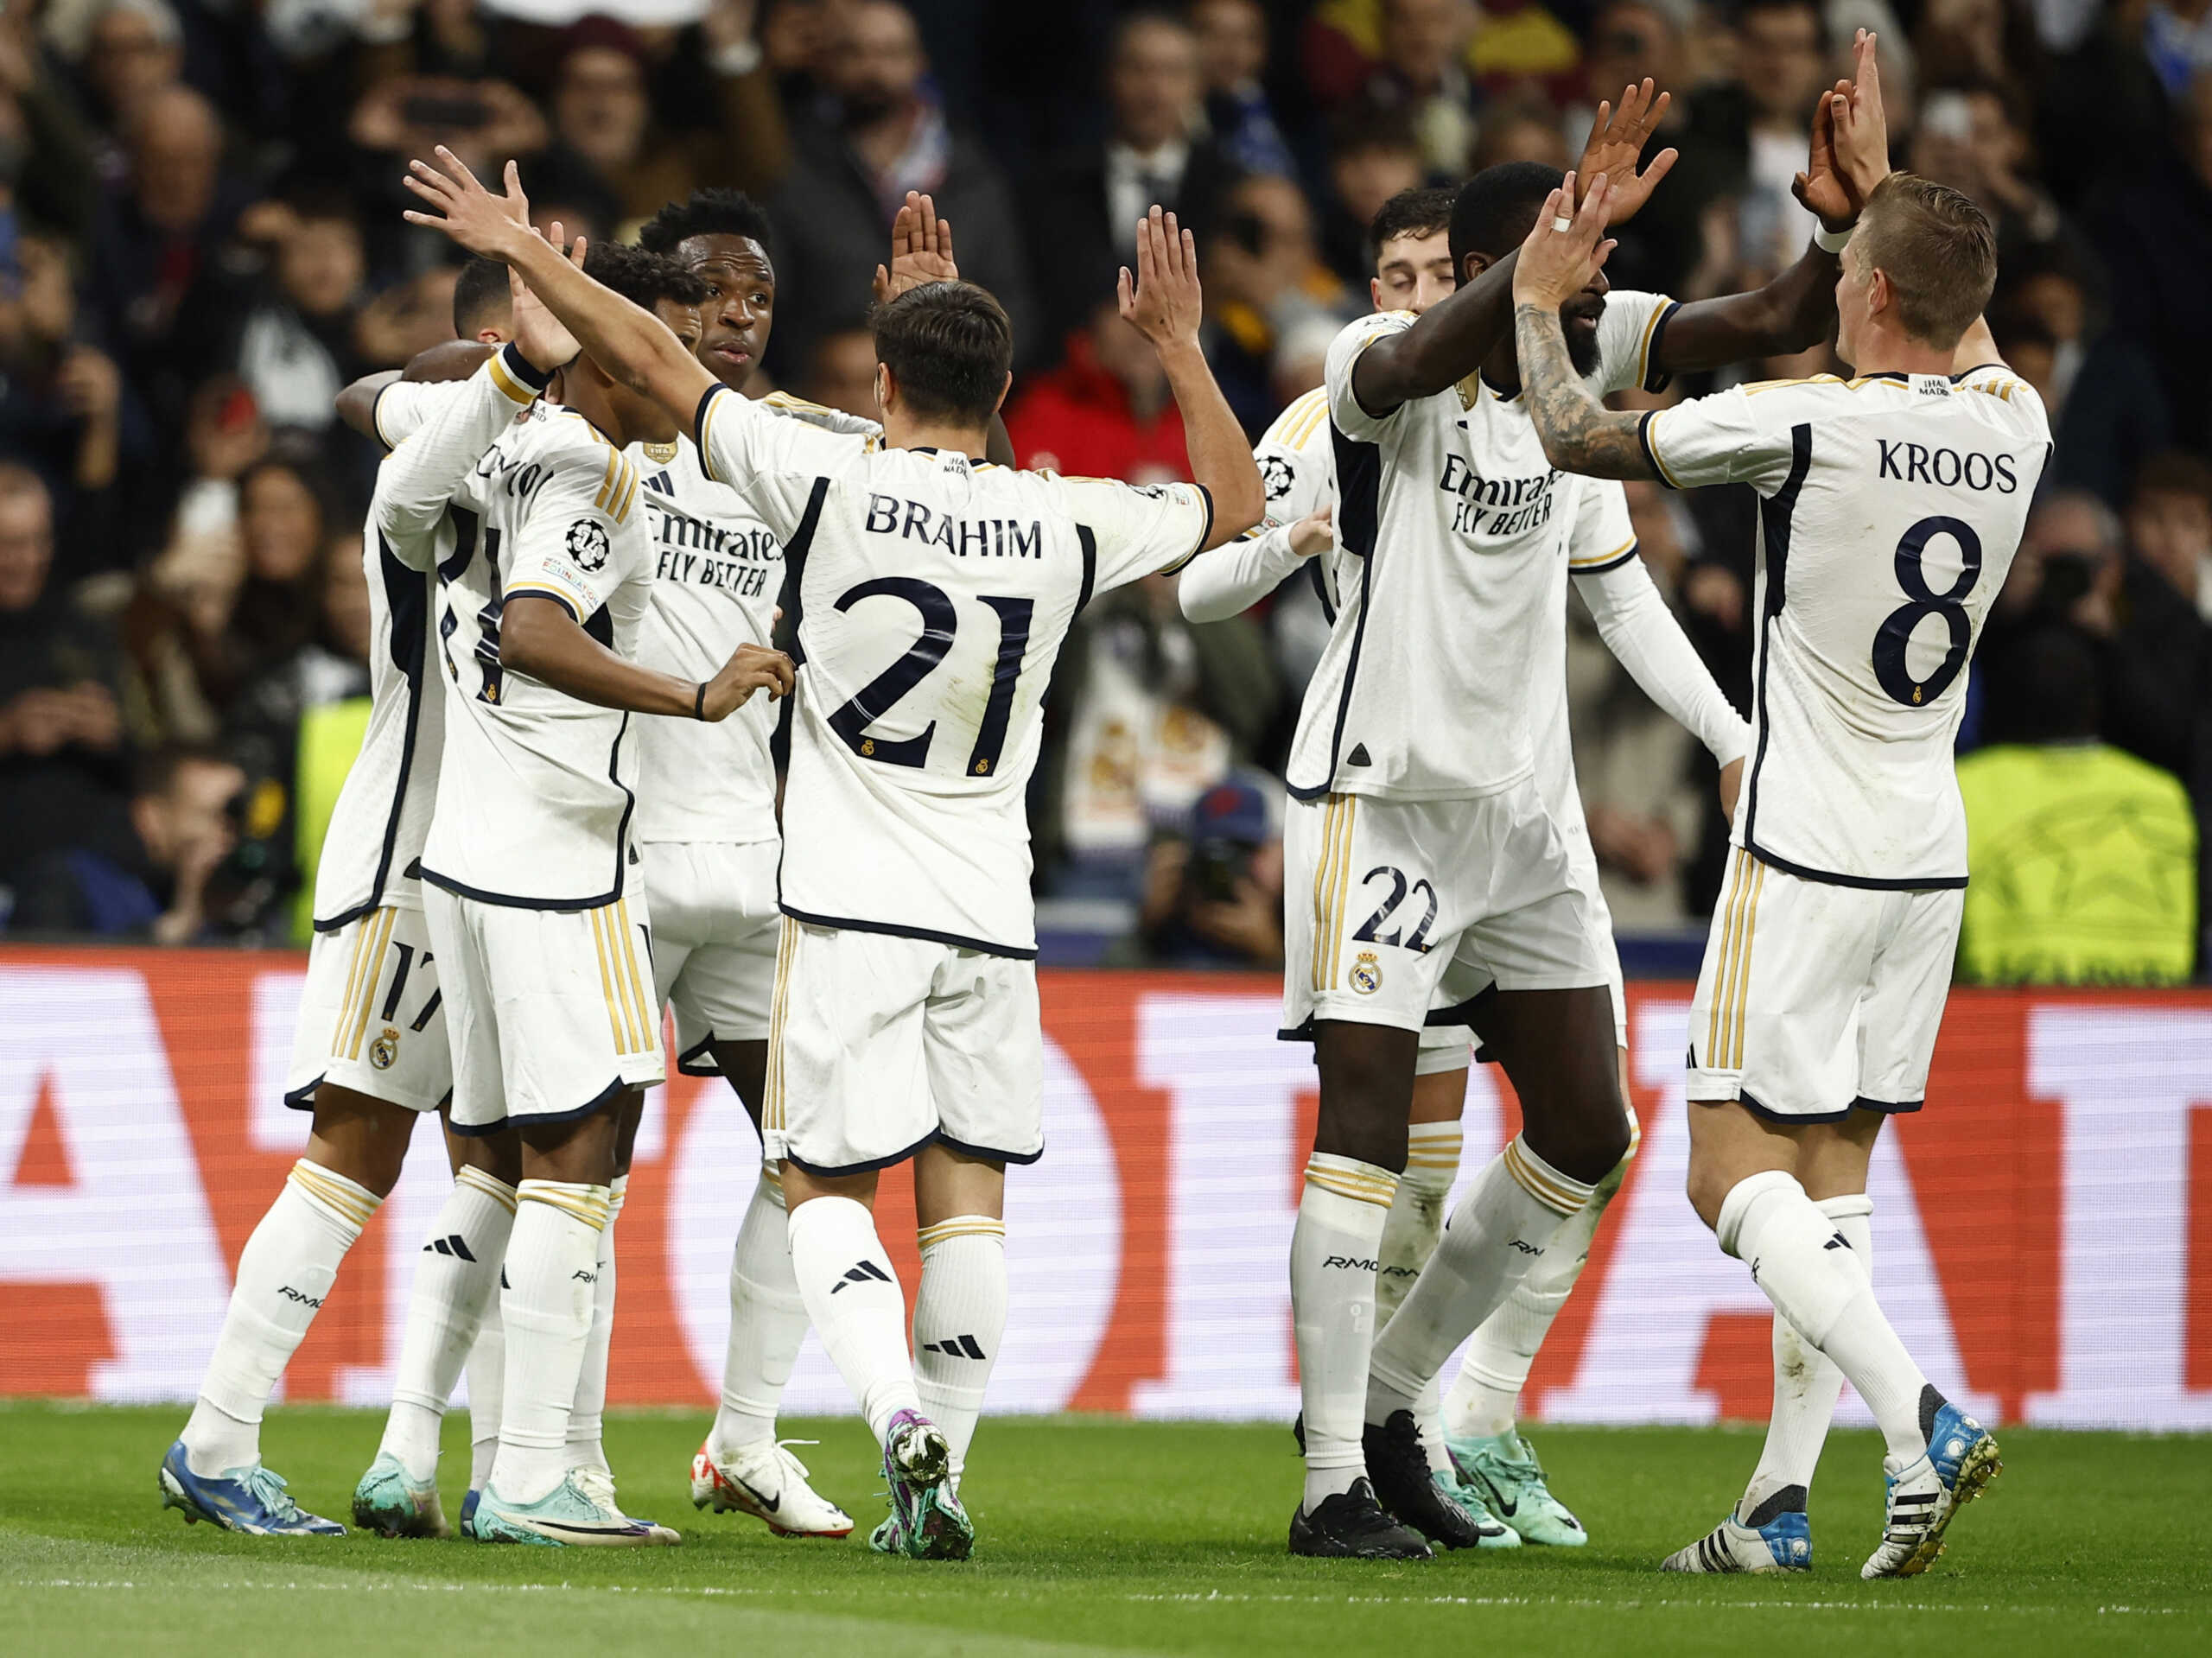 Ρεάλ Μαδρίτης – Μπράγκα 3-0 και Σάλτζμπουργκ – Ίντερ 0-1 για το Champions League